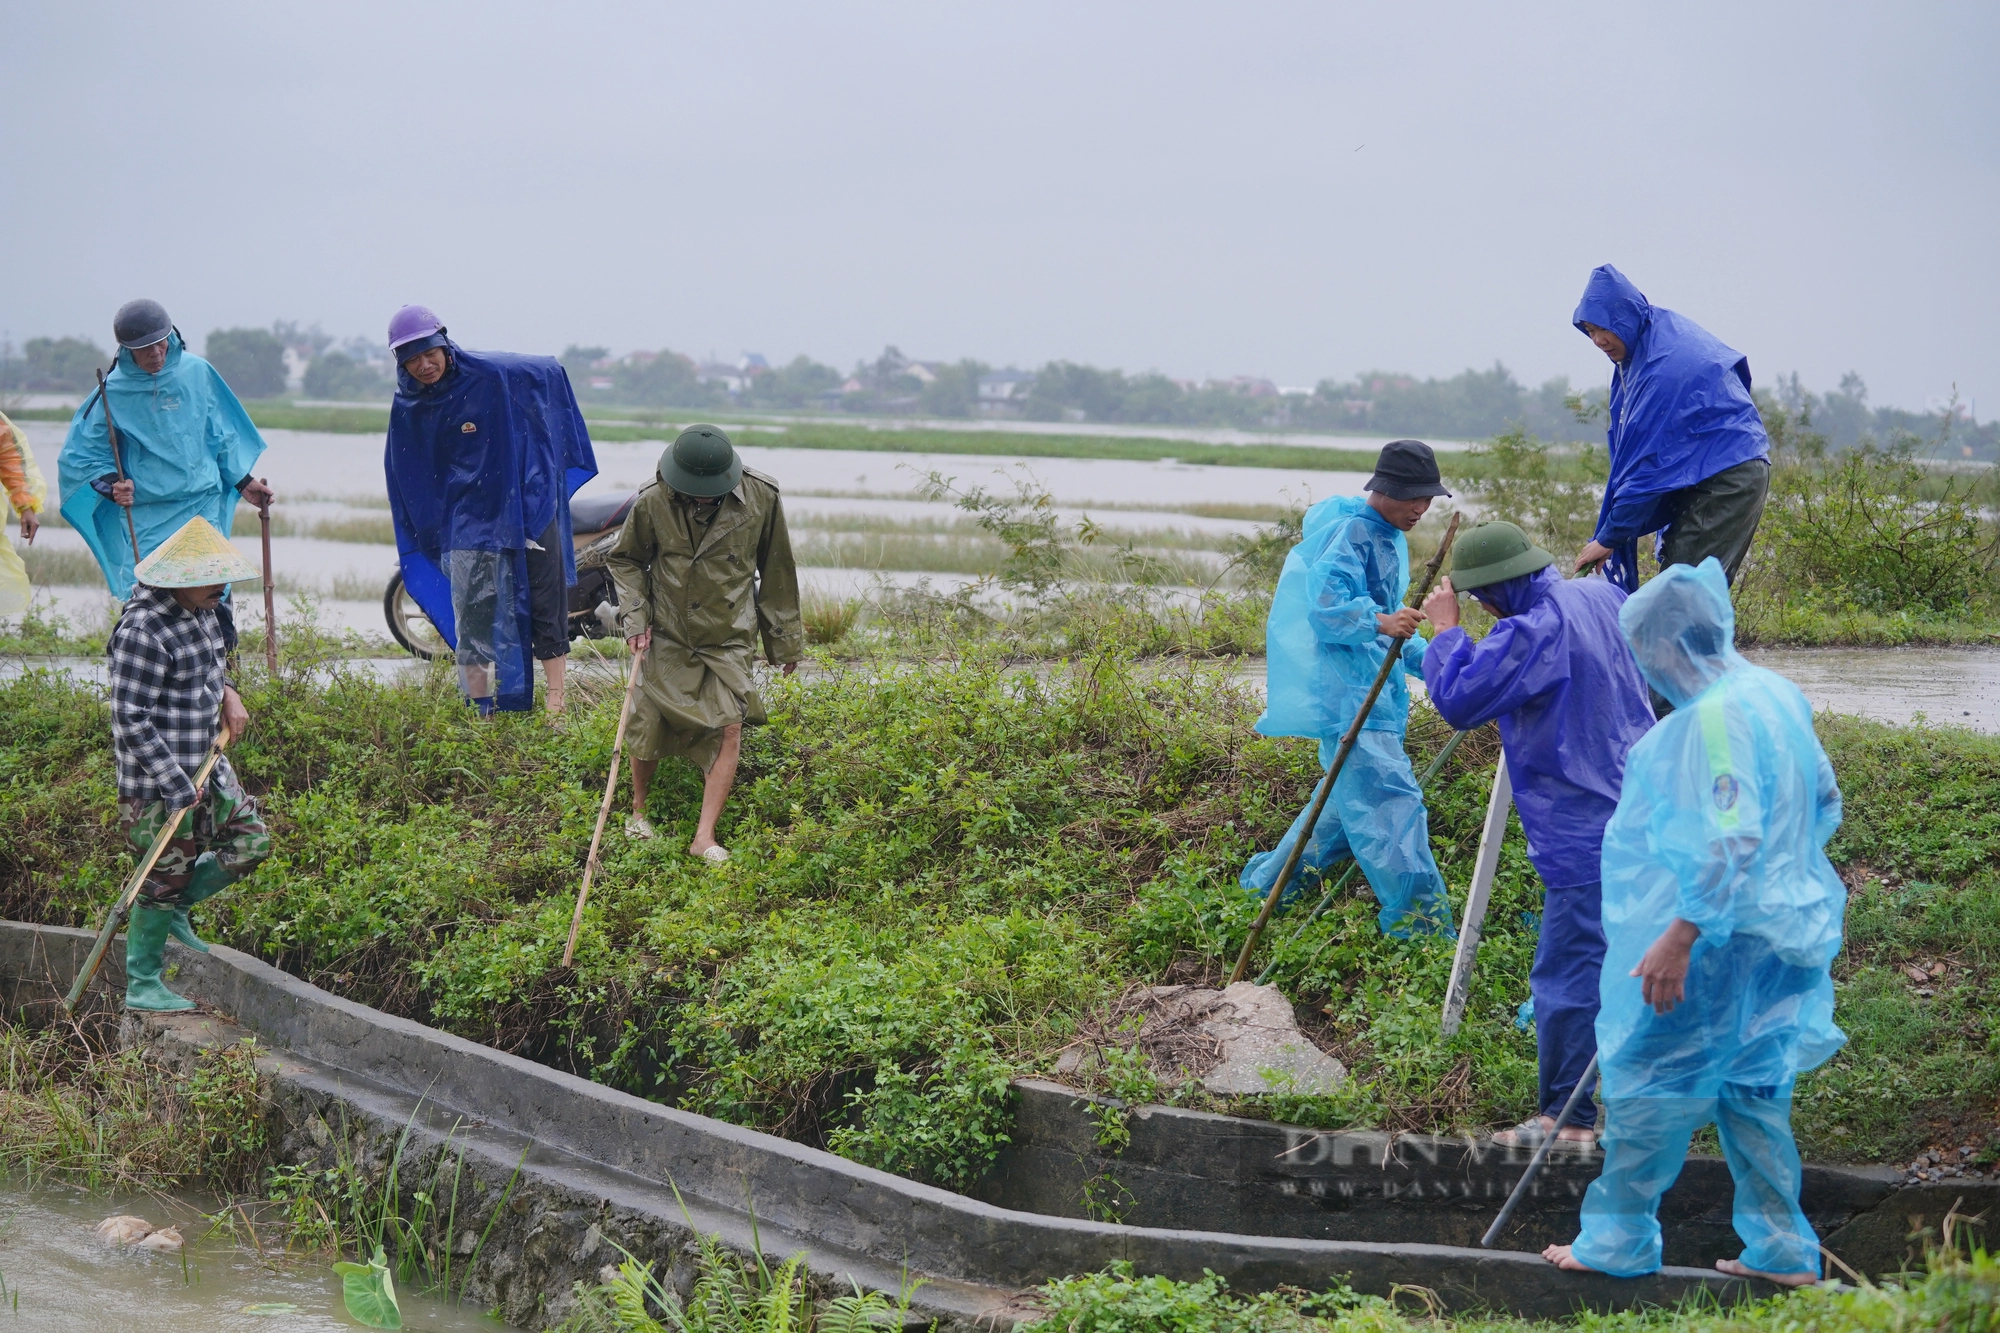 Cả làng ở Hà Tĩnh “đội mưa” cùng nhau lội nước đi bắt chuột bảo vệ mùa màng - Ảnh 4.